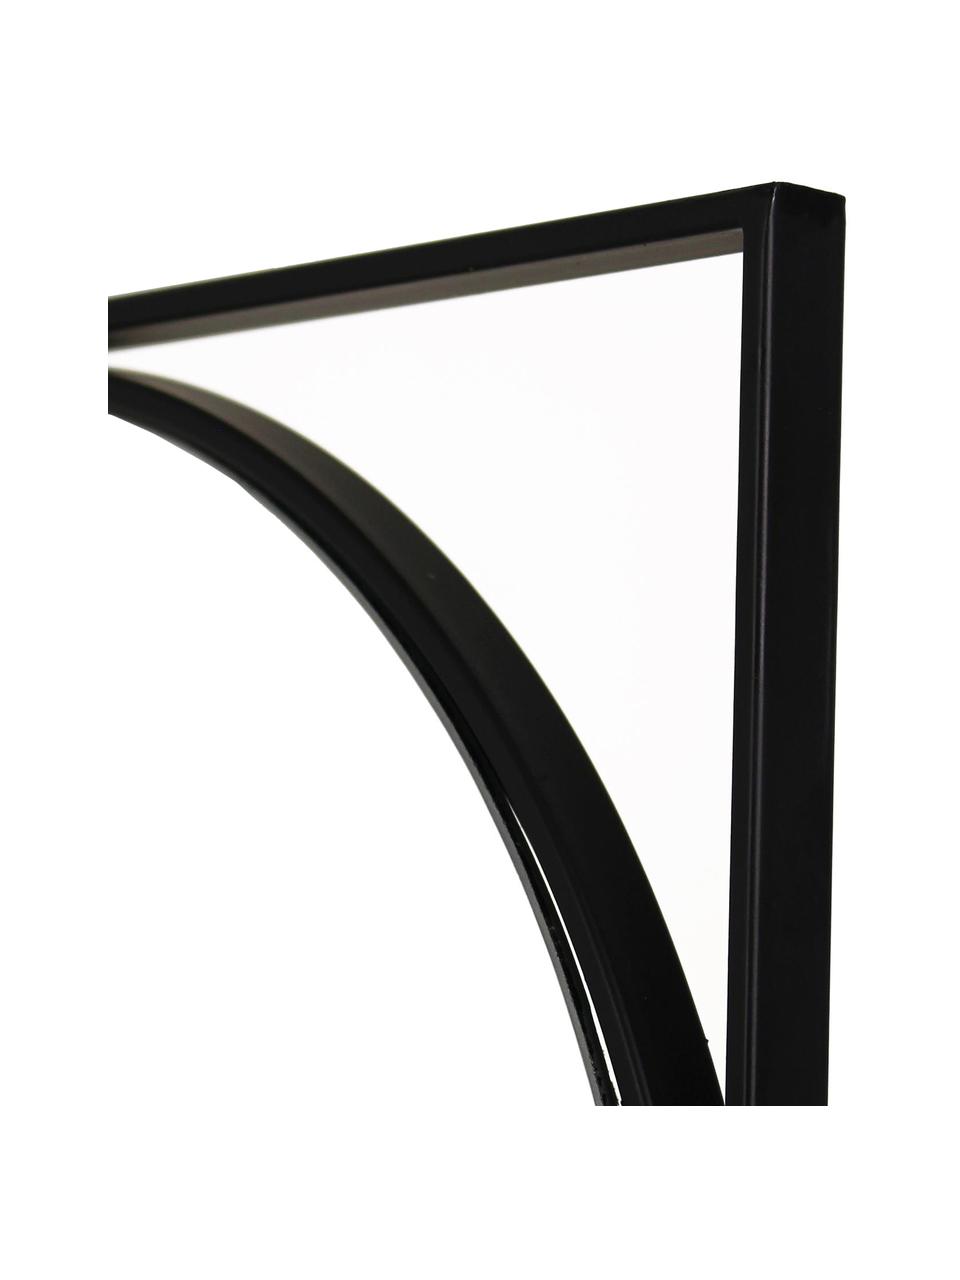 Owalne lustro ścienne z metalową ramą Azurite, Czarny, S 37 x W 117 cm